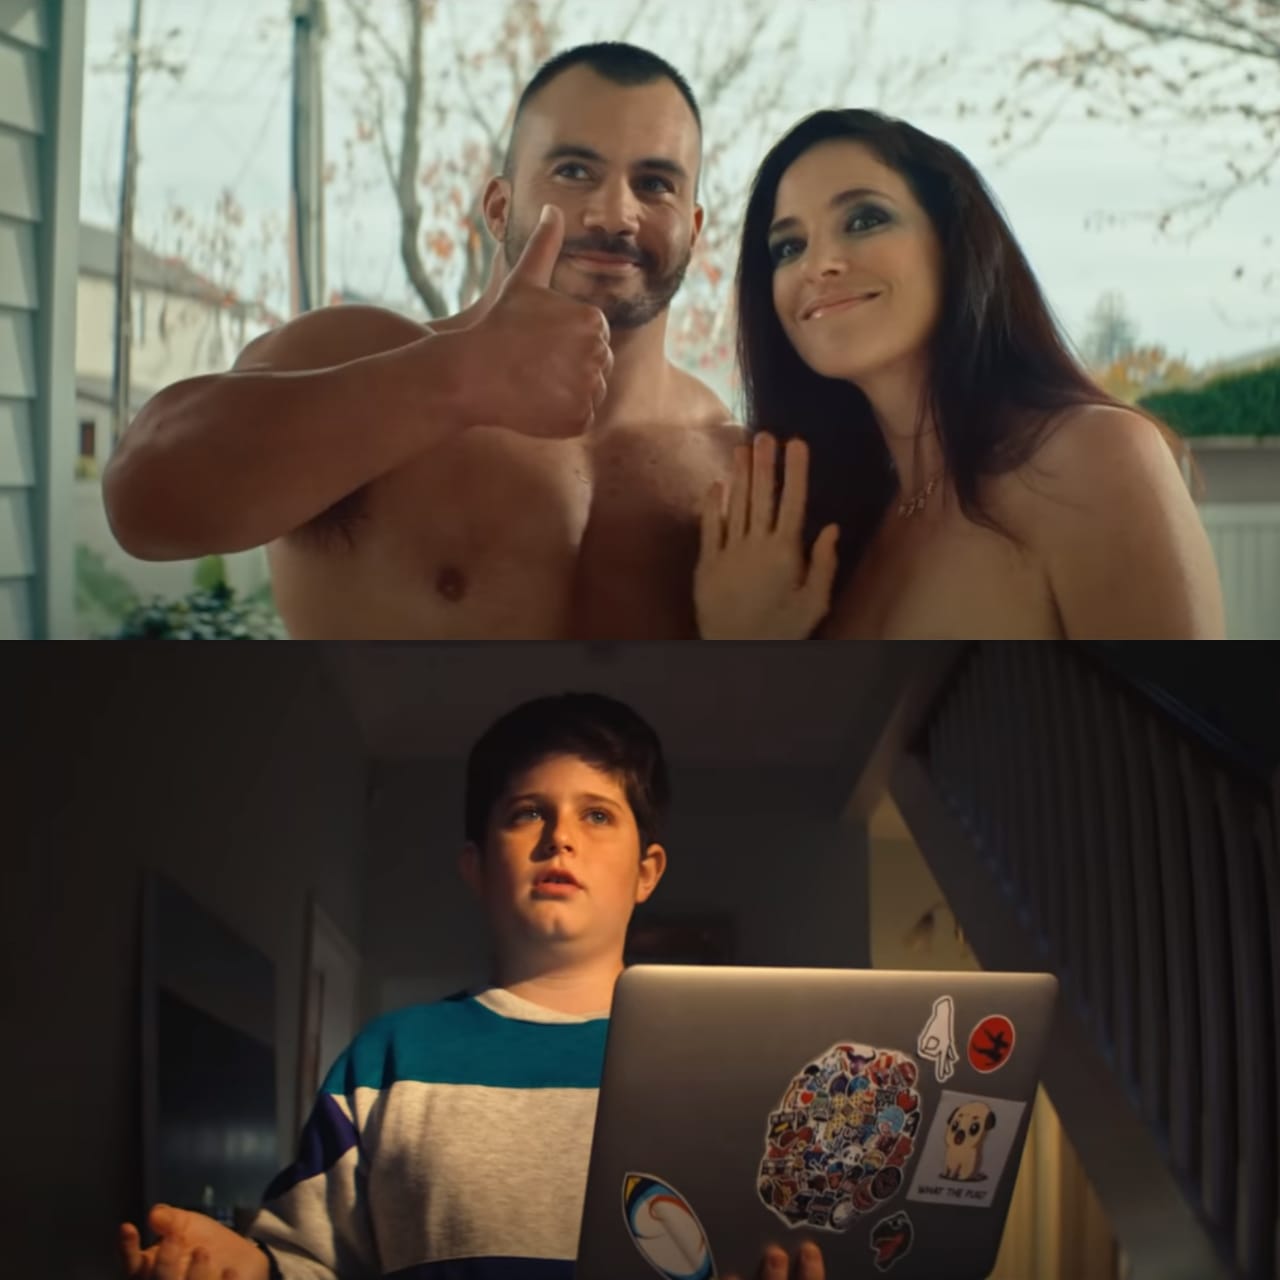 La campaña contó con la presencia de dos actores porno. Foto: Captura de video